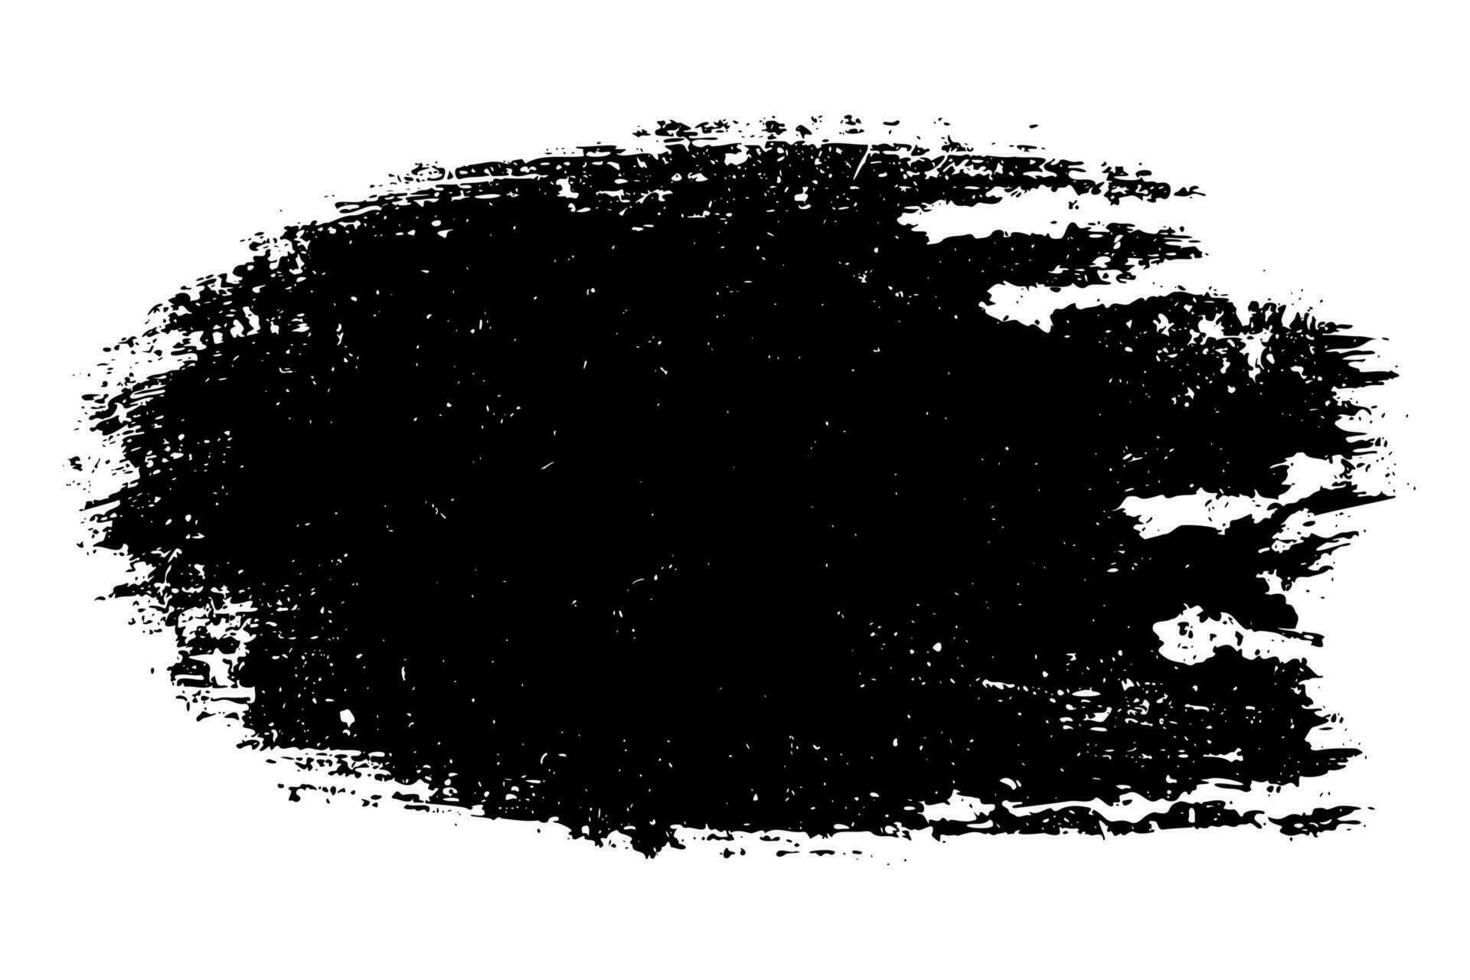 repig svart bläck penseldrag textur isolerat på vit bakgrund vektor